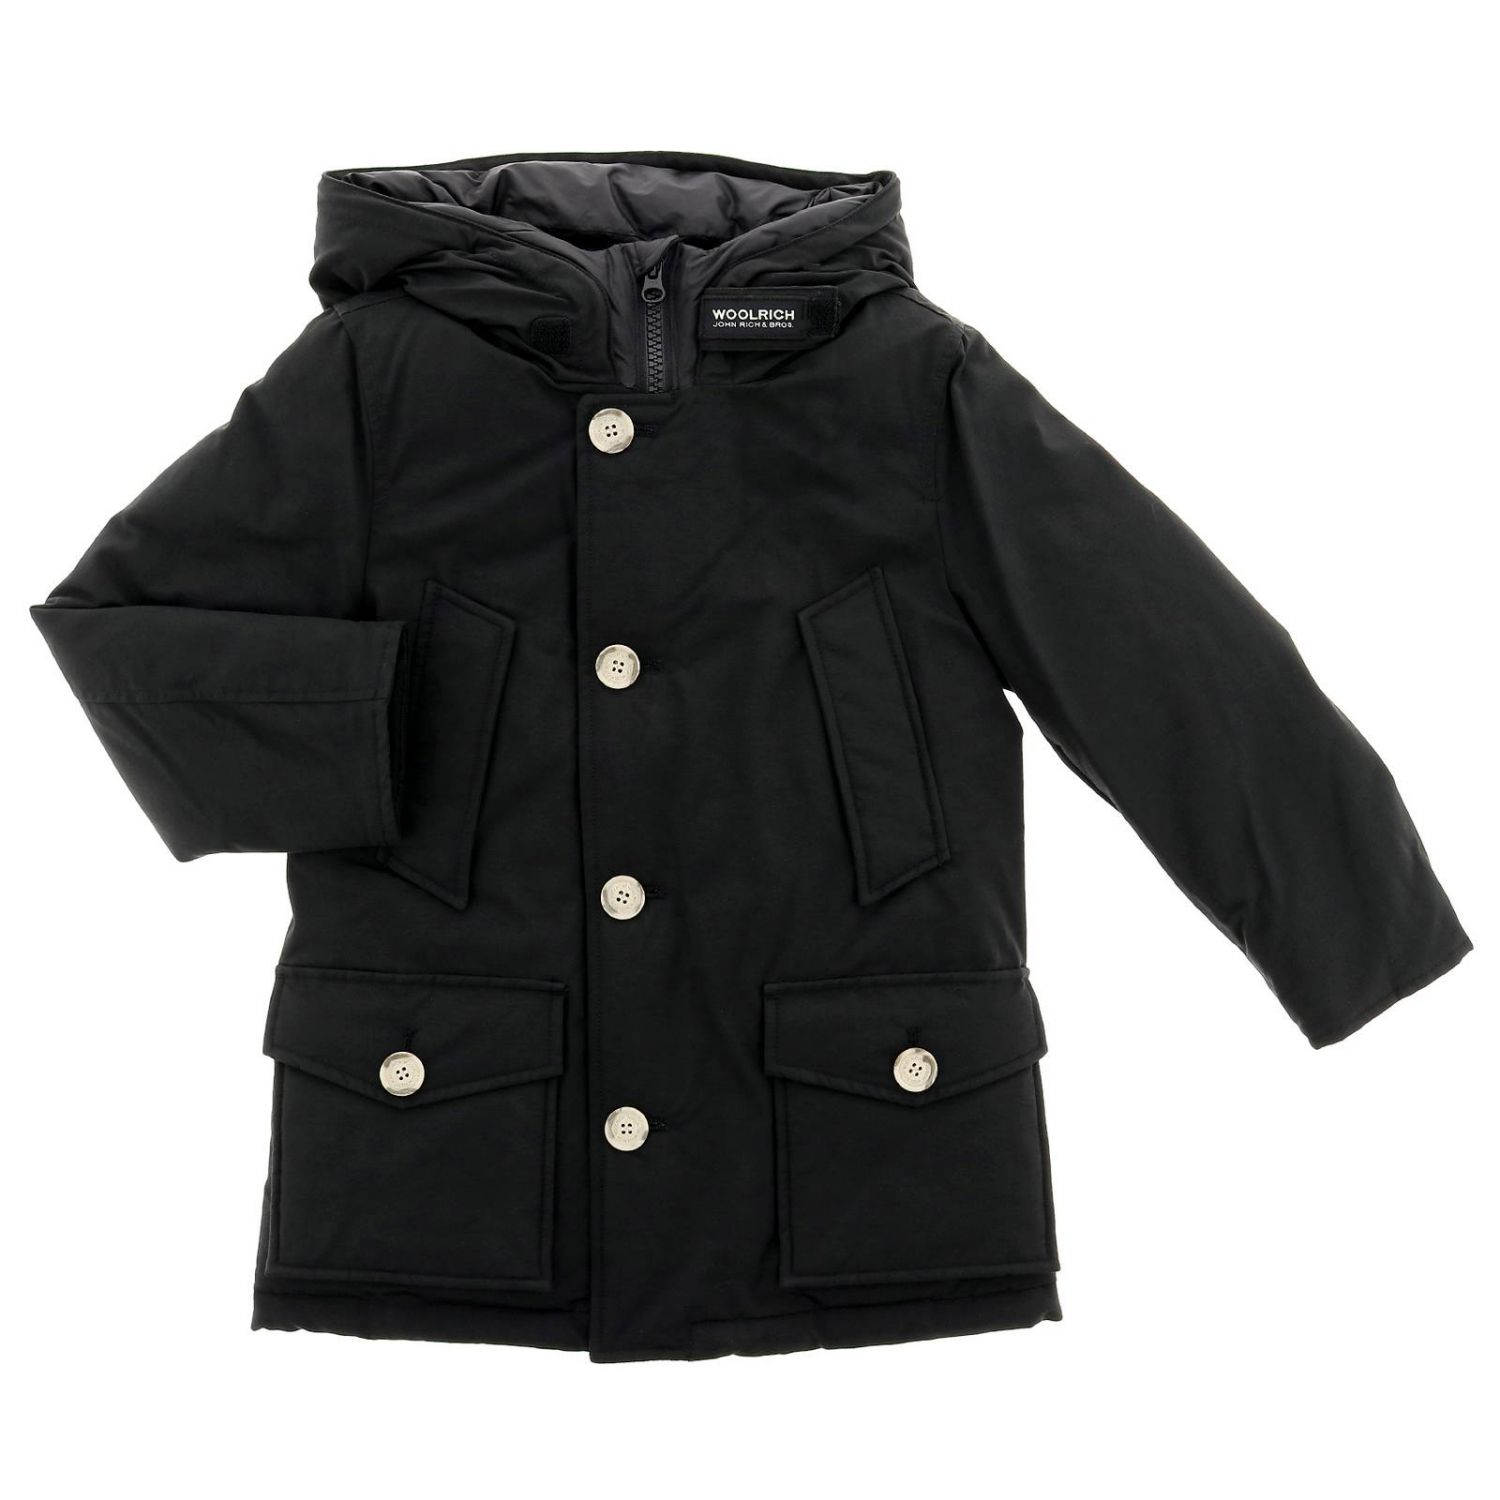 Woolrich Outlet: Jacket kids | Jacket Woolrich Kids Black | Jacket ...